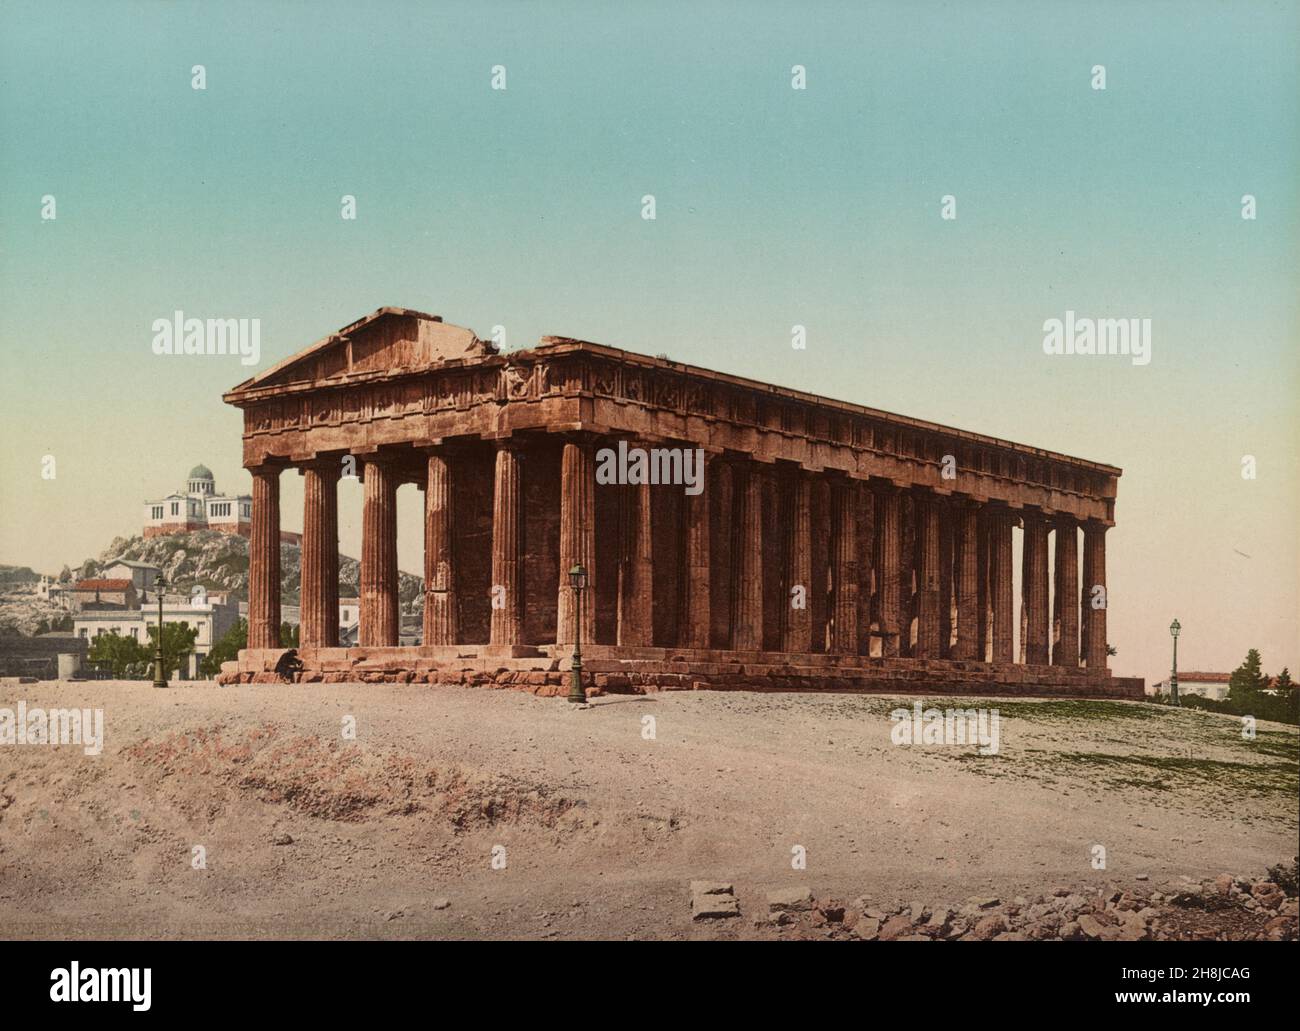 Der Tempel des Hephaestus. Früher bekannt als der Tempel Theseus in Athen, Griechenland, Vintage Photochrom Farbdruck ca. 1890-1910 Stockfoto